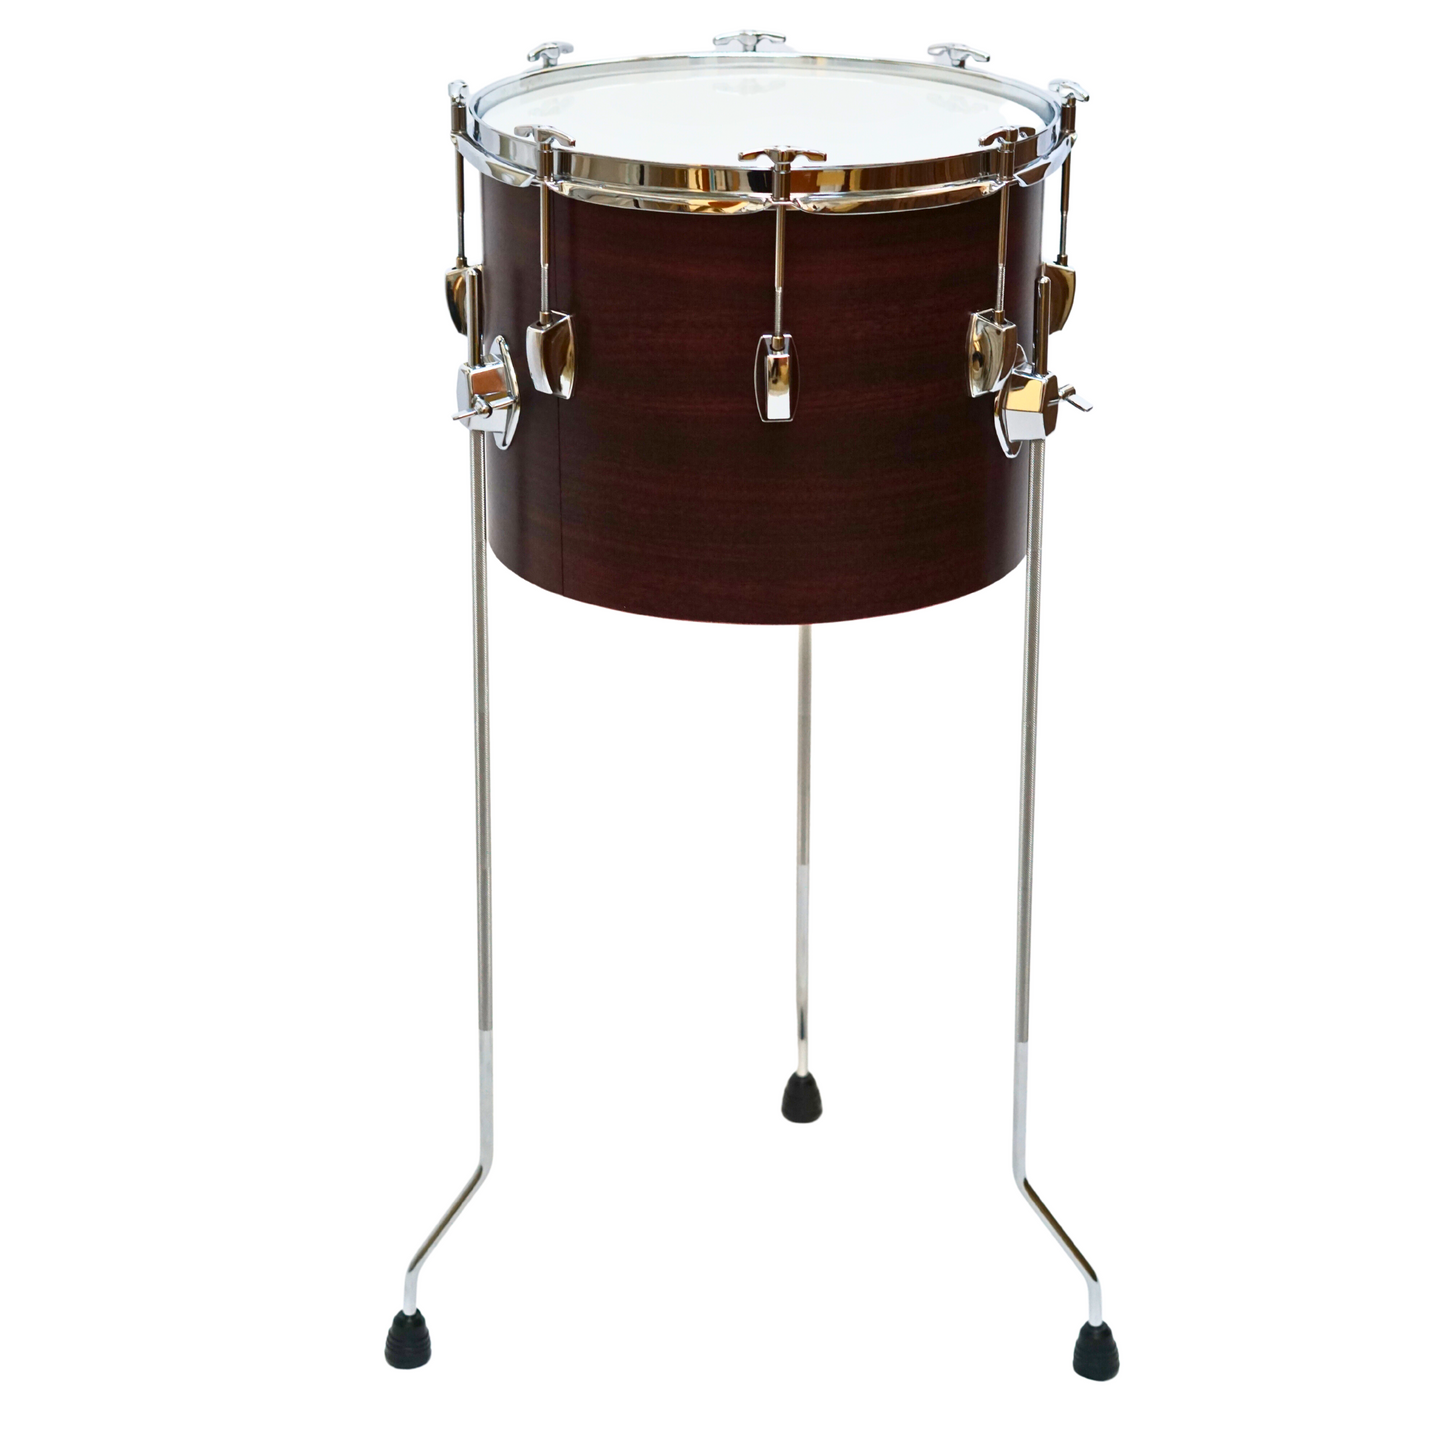 EMUS Timpani Drum, 3 Sizes 12", 14", 16"